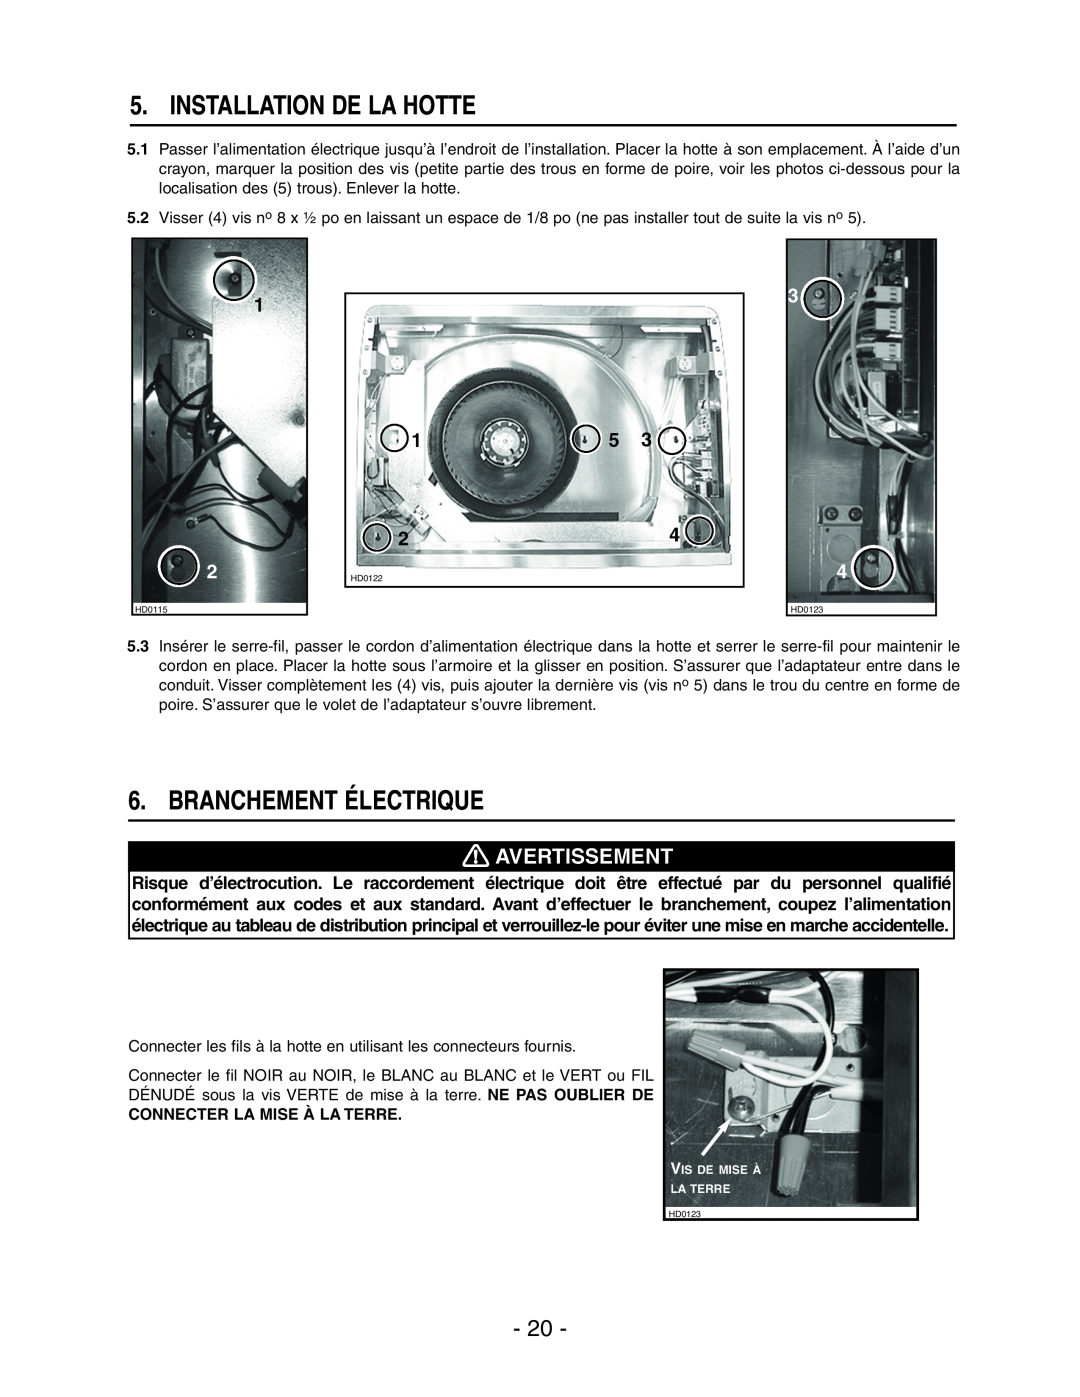 Broan E661 manual Installation De La Hotte, Branchement Électrique, Avertissement, Connecter La Mise À La Terre 